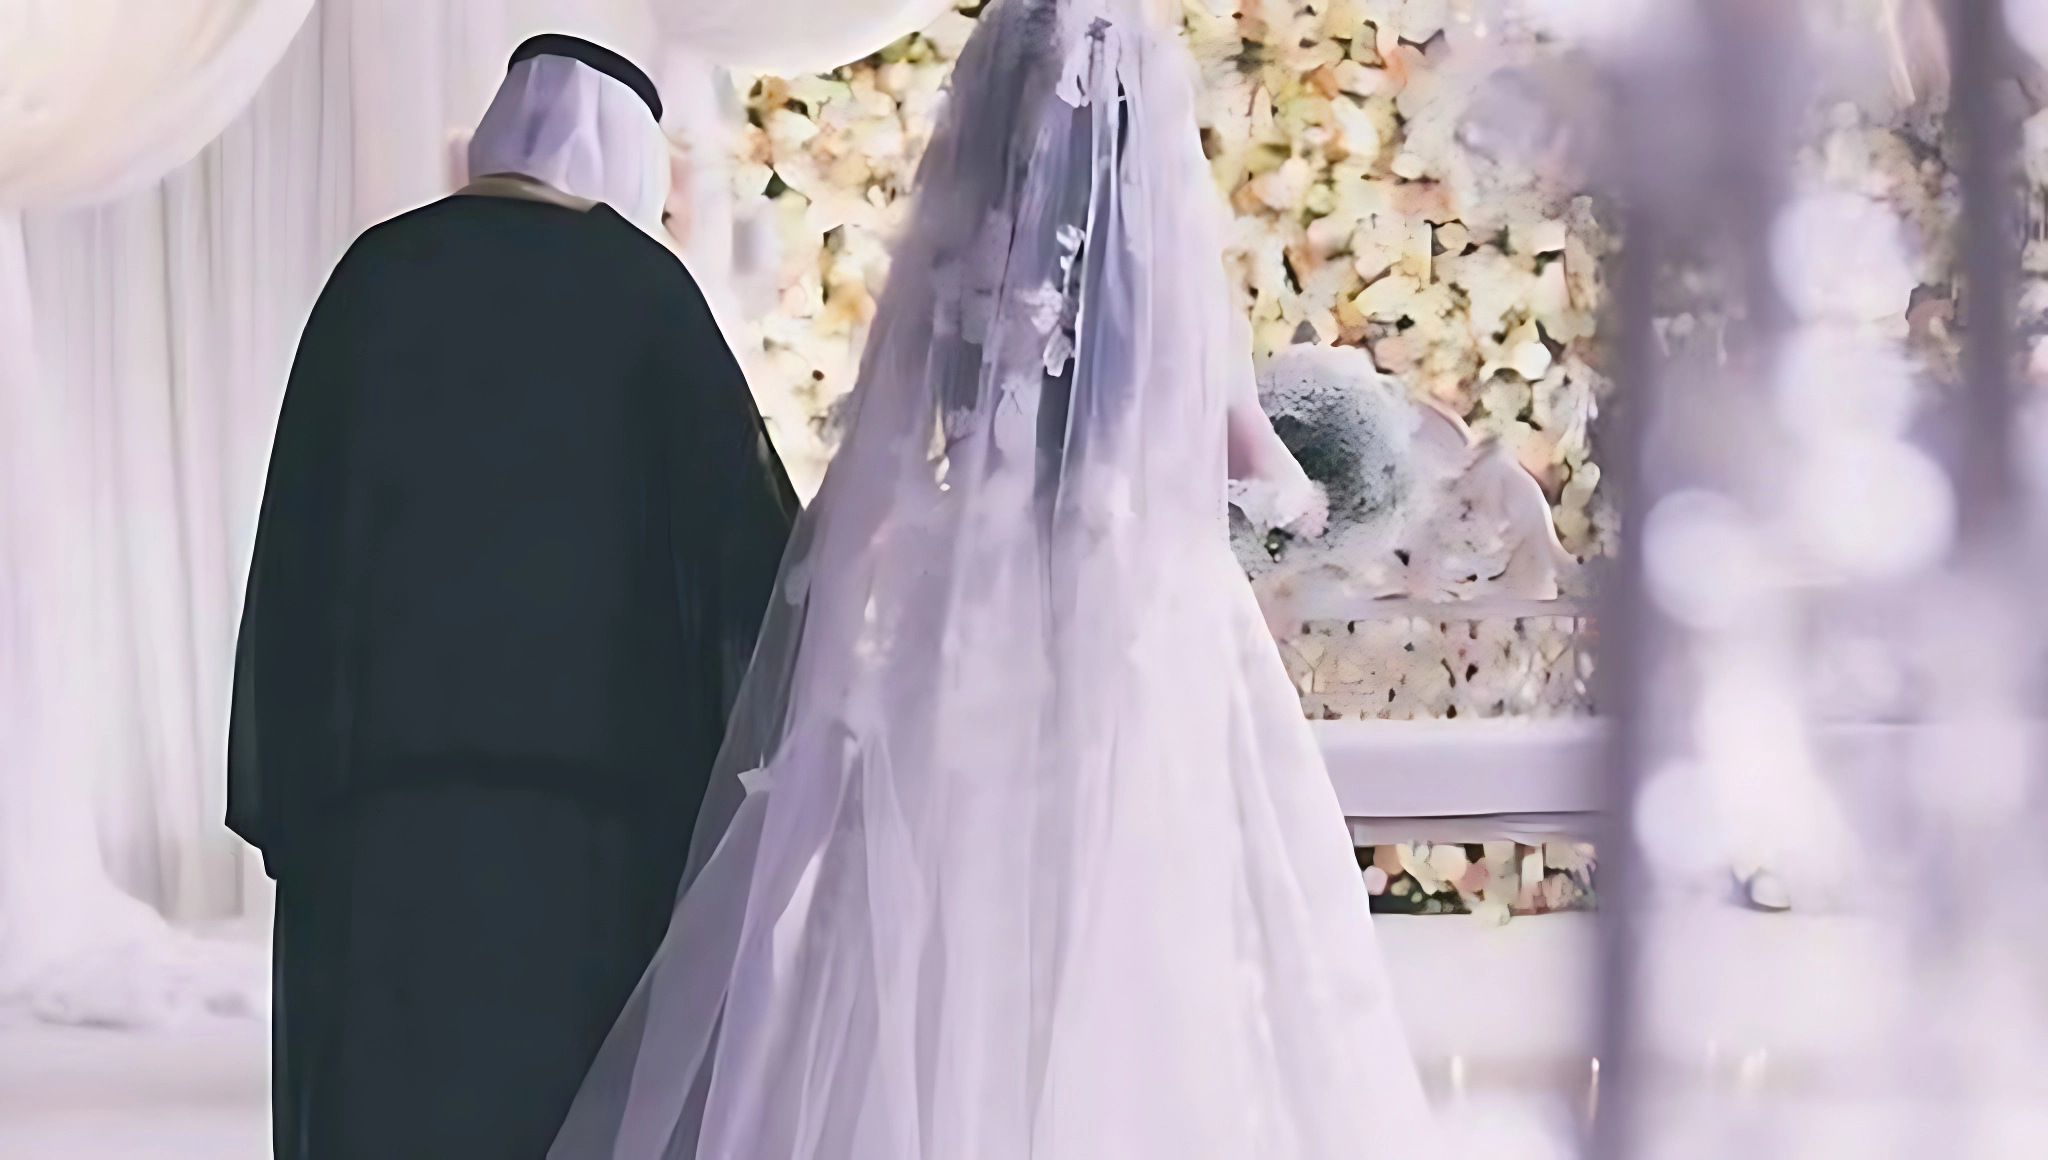 اختيار الفتيات السعوديات الزواج من أجانب